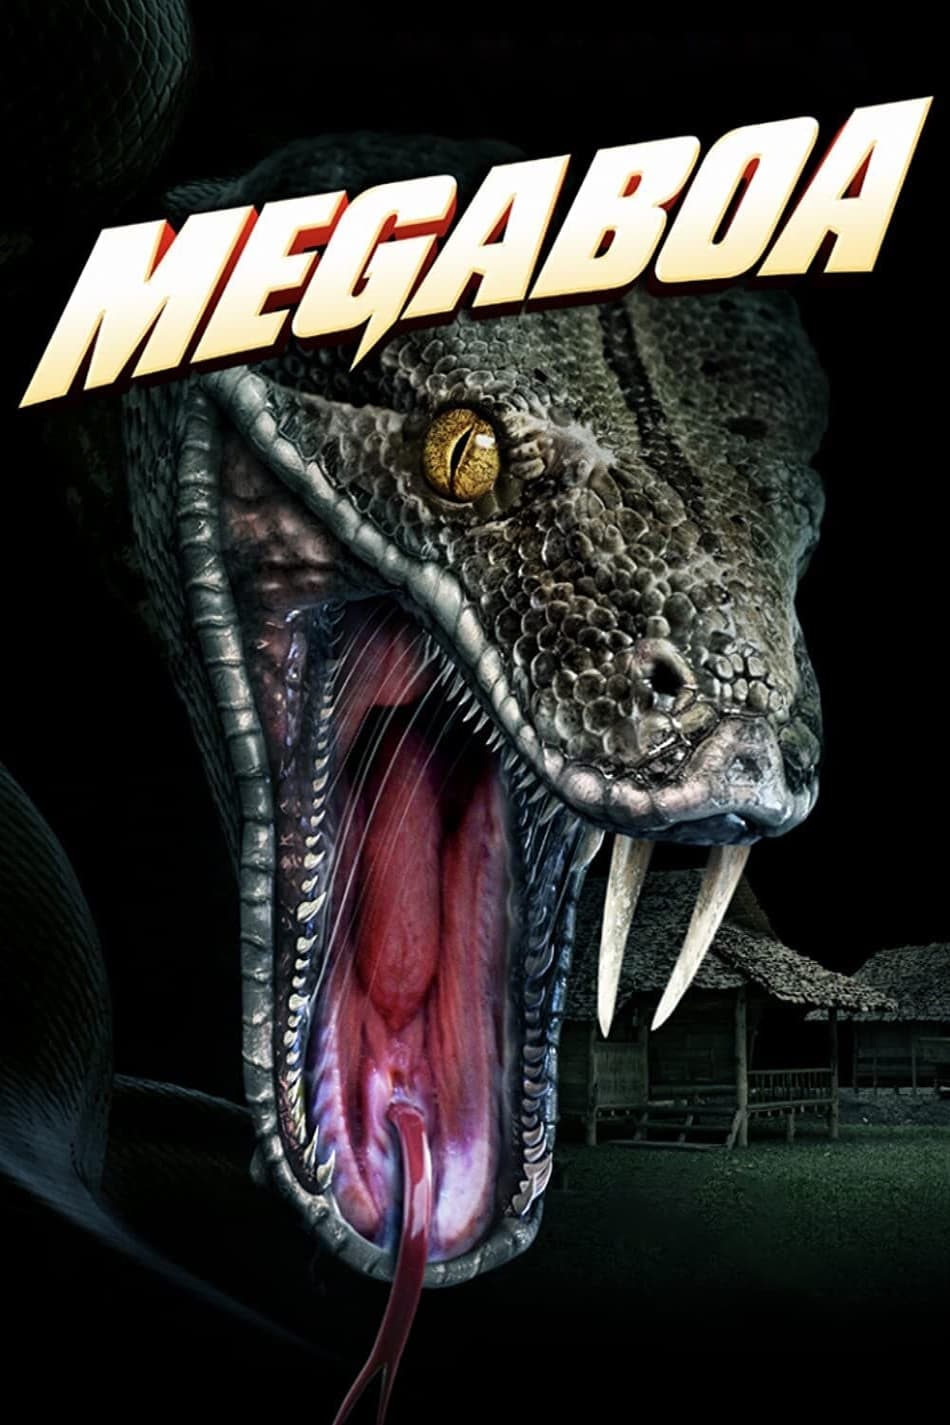 Megaboa film